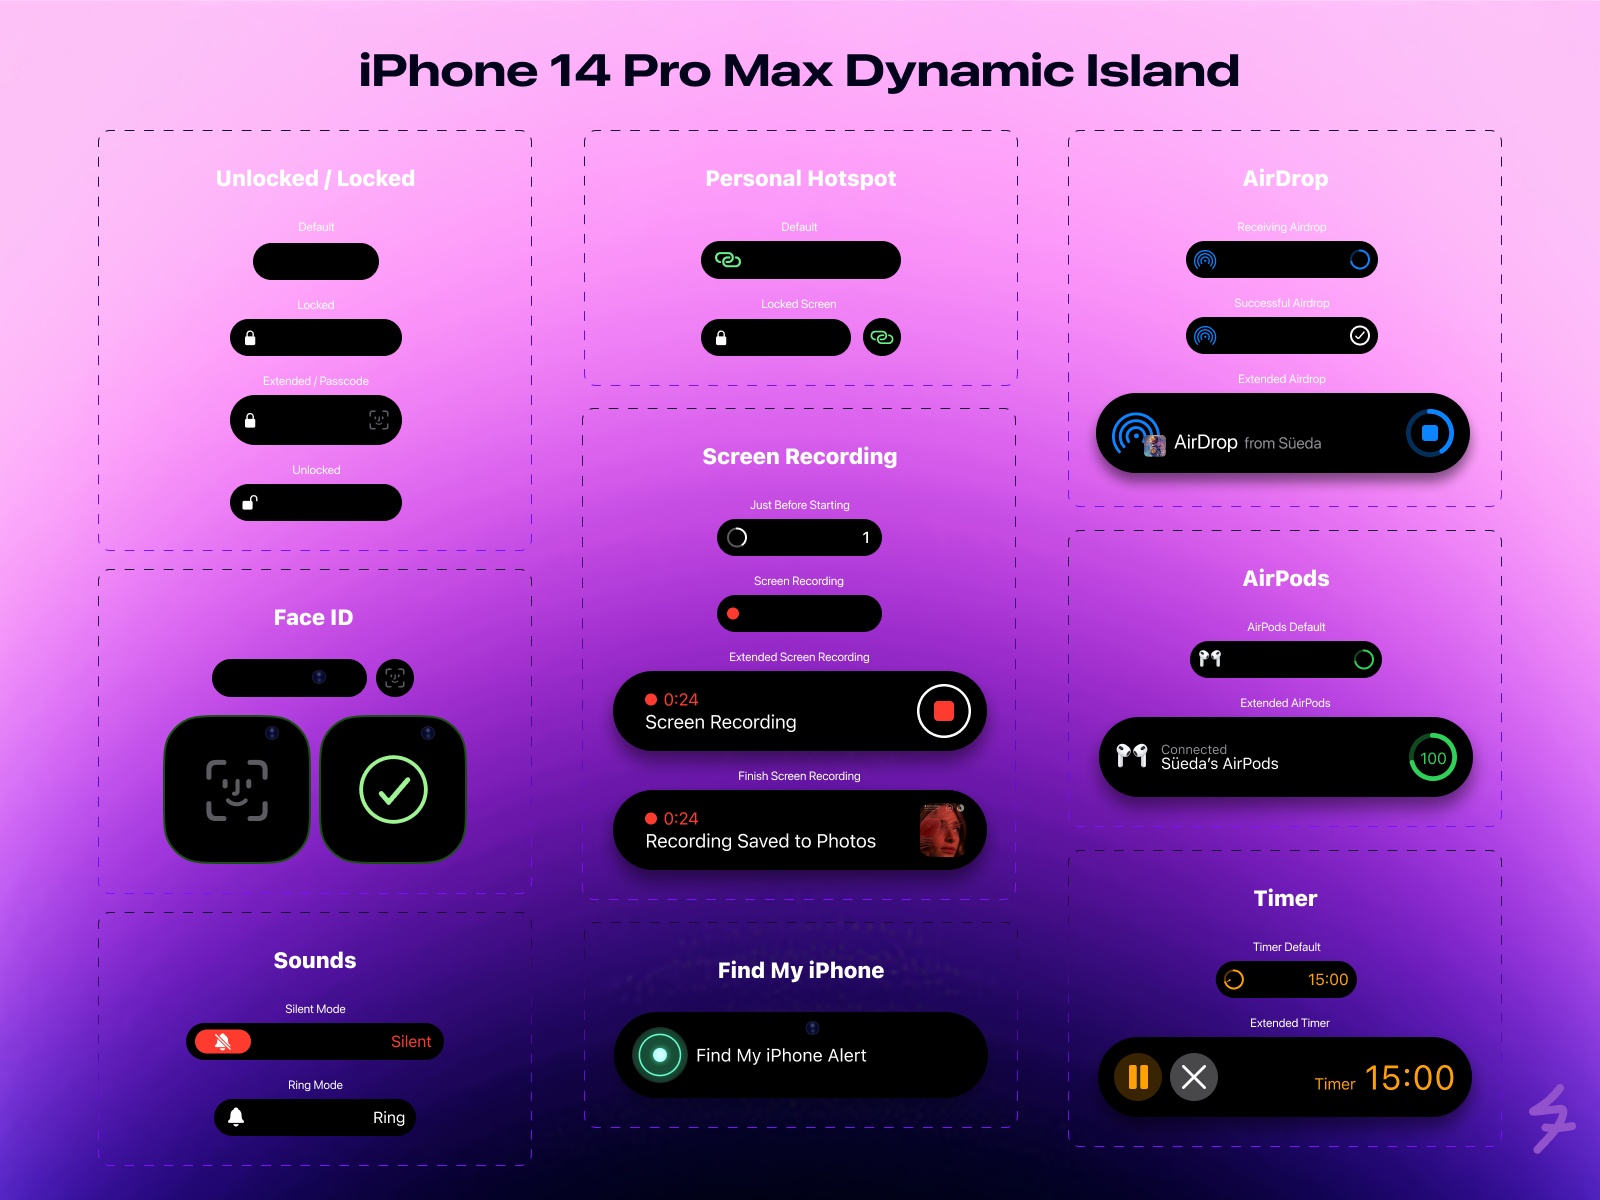 iPhone 14 Pro Max: Những bức ảnh về iPhone 14 Pro Max chắc chắn sẽ thu hút được sự chú ý của bạn. Với những tính năng mới, hiệu năng tốt hơn và thiết kế đẹp hơn, chiếc điện thoại này xứng đáng trở thành một trong những sản phẩm công nghệ hot nhất hiện nay.